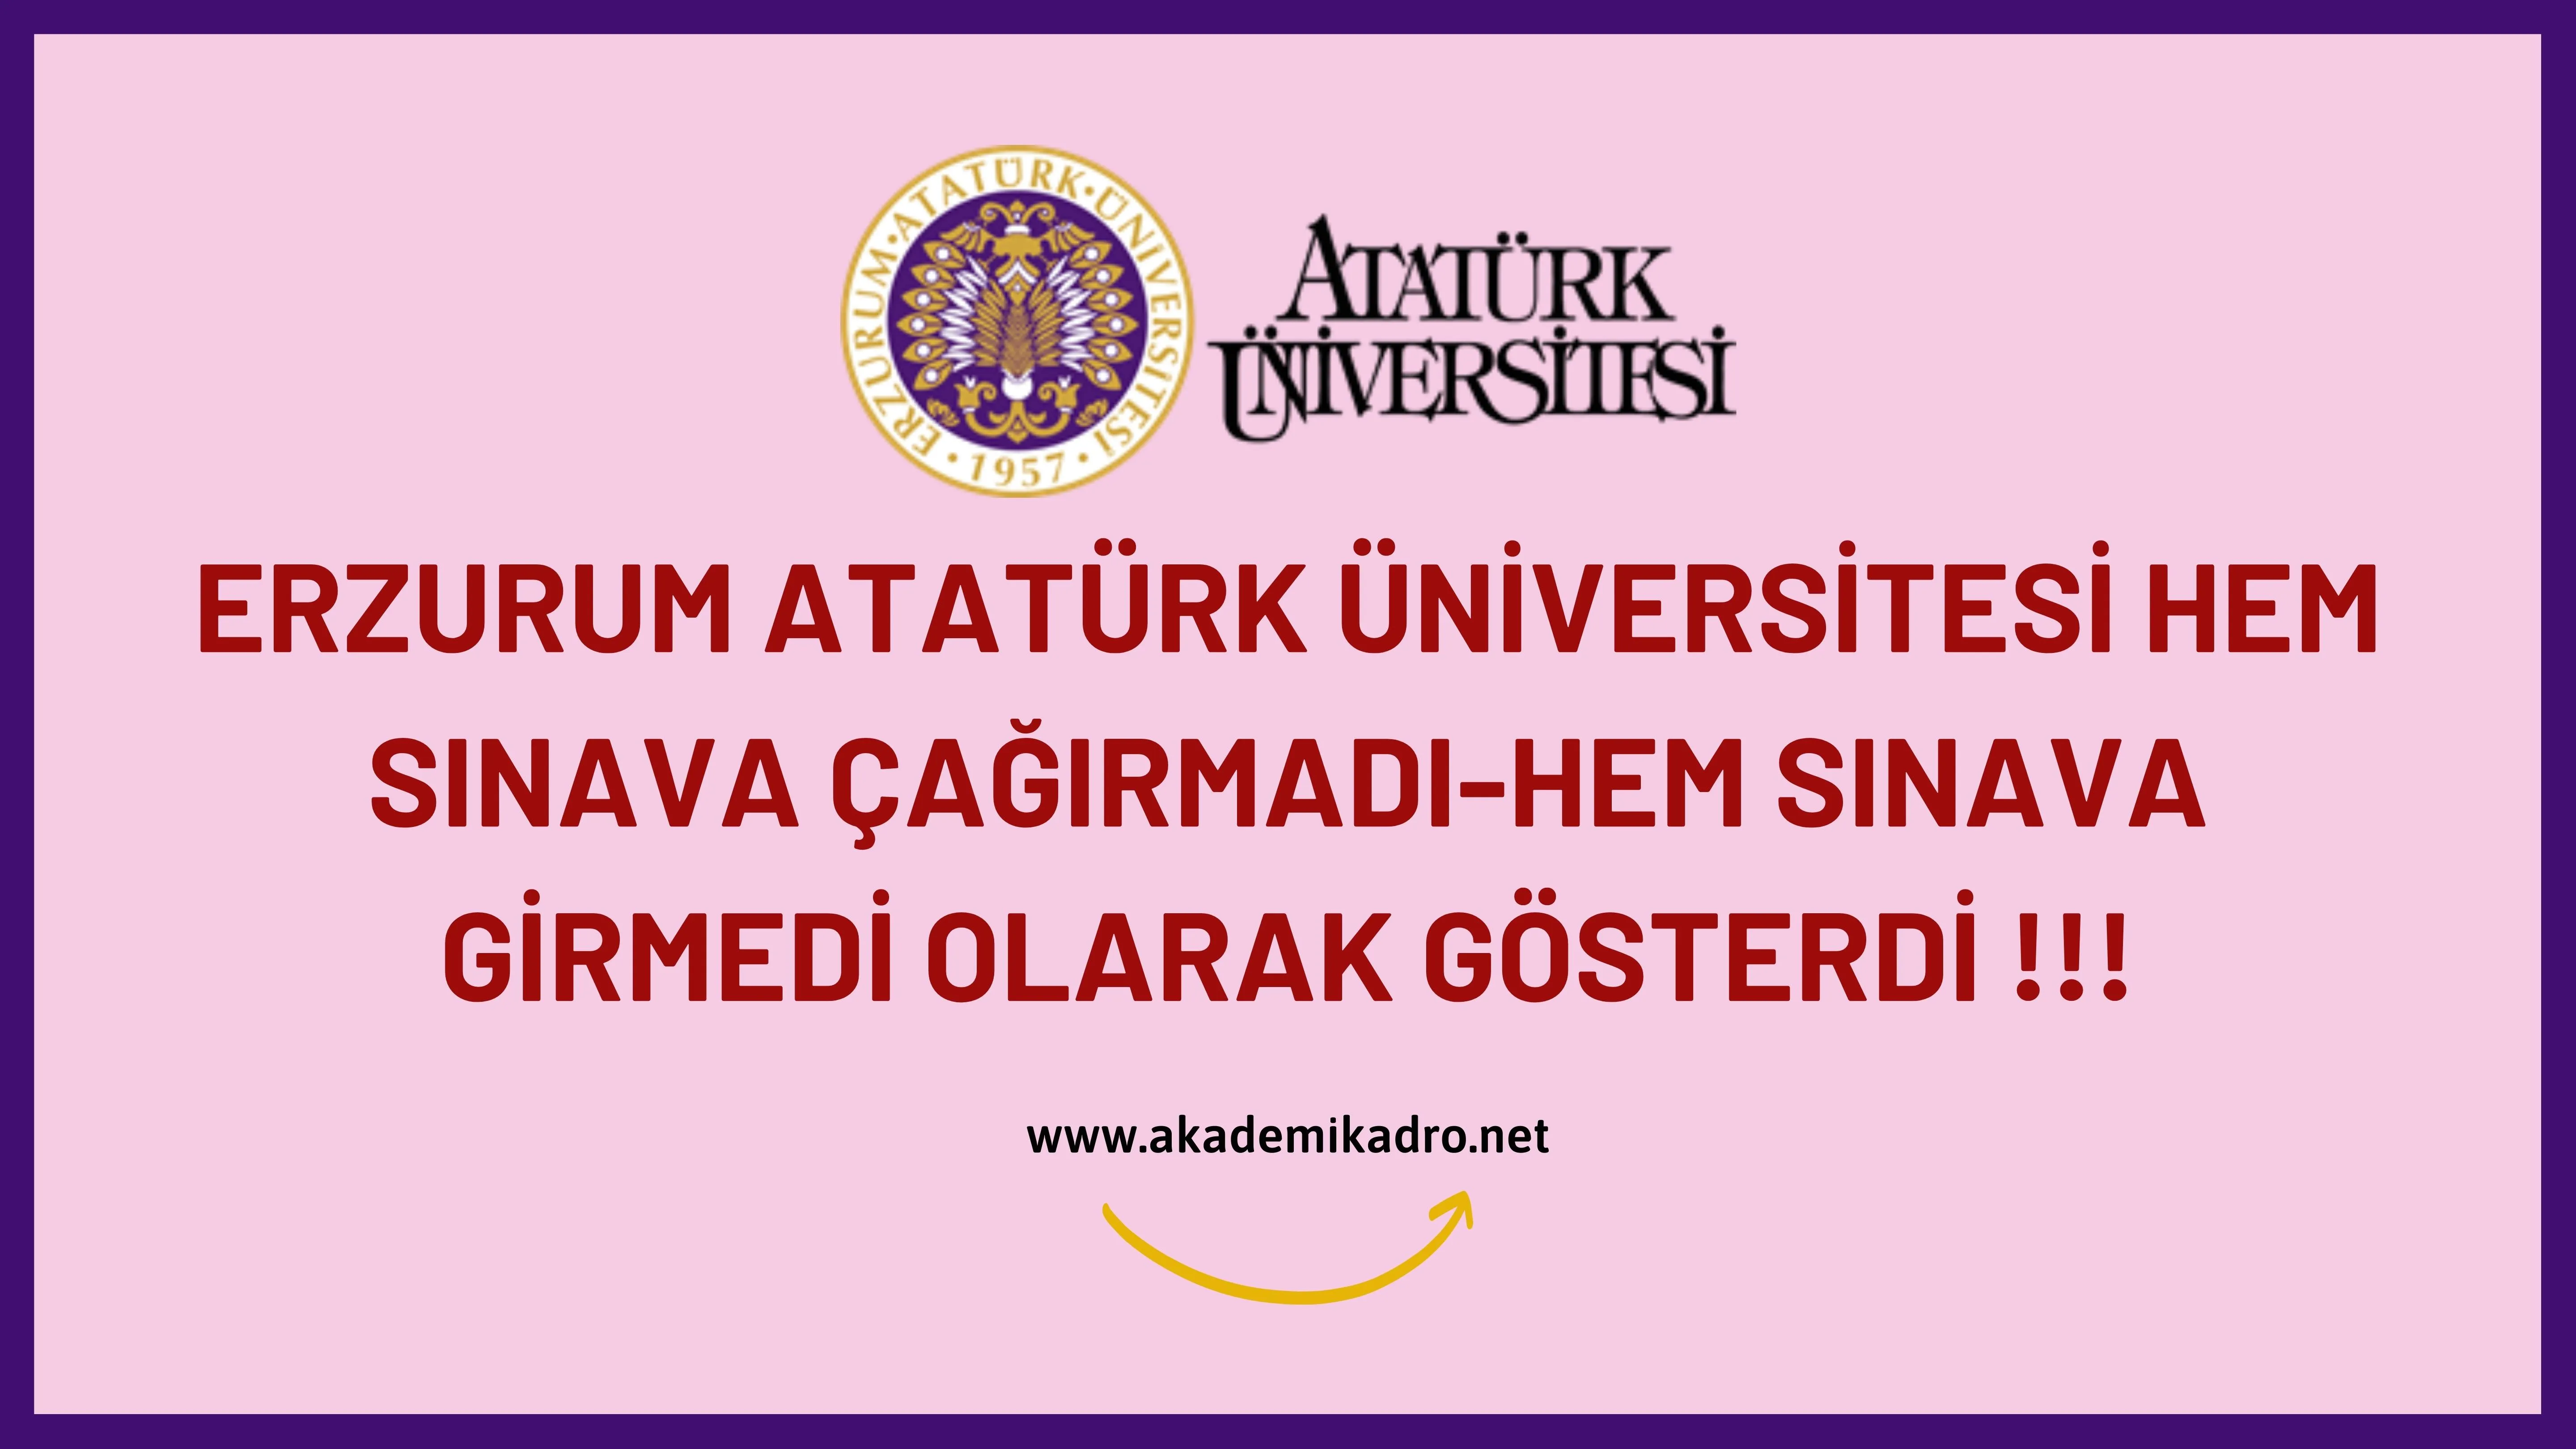 Atatürk Üniversitesi öğretim elemanı alımlarında ön değerlendirme aşamasında elediği adayları sınava girmedi gösterdi!